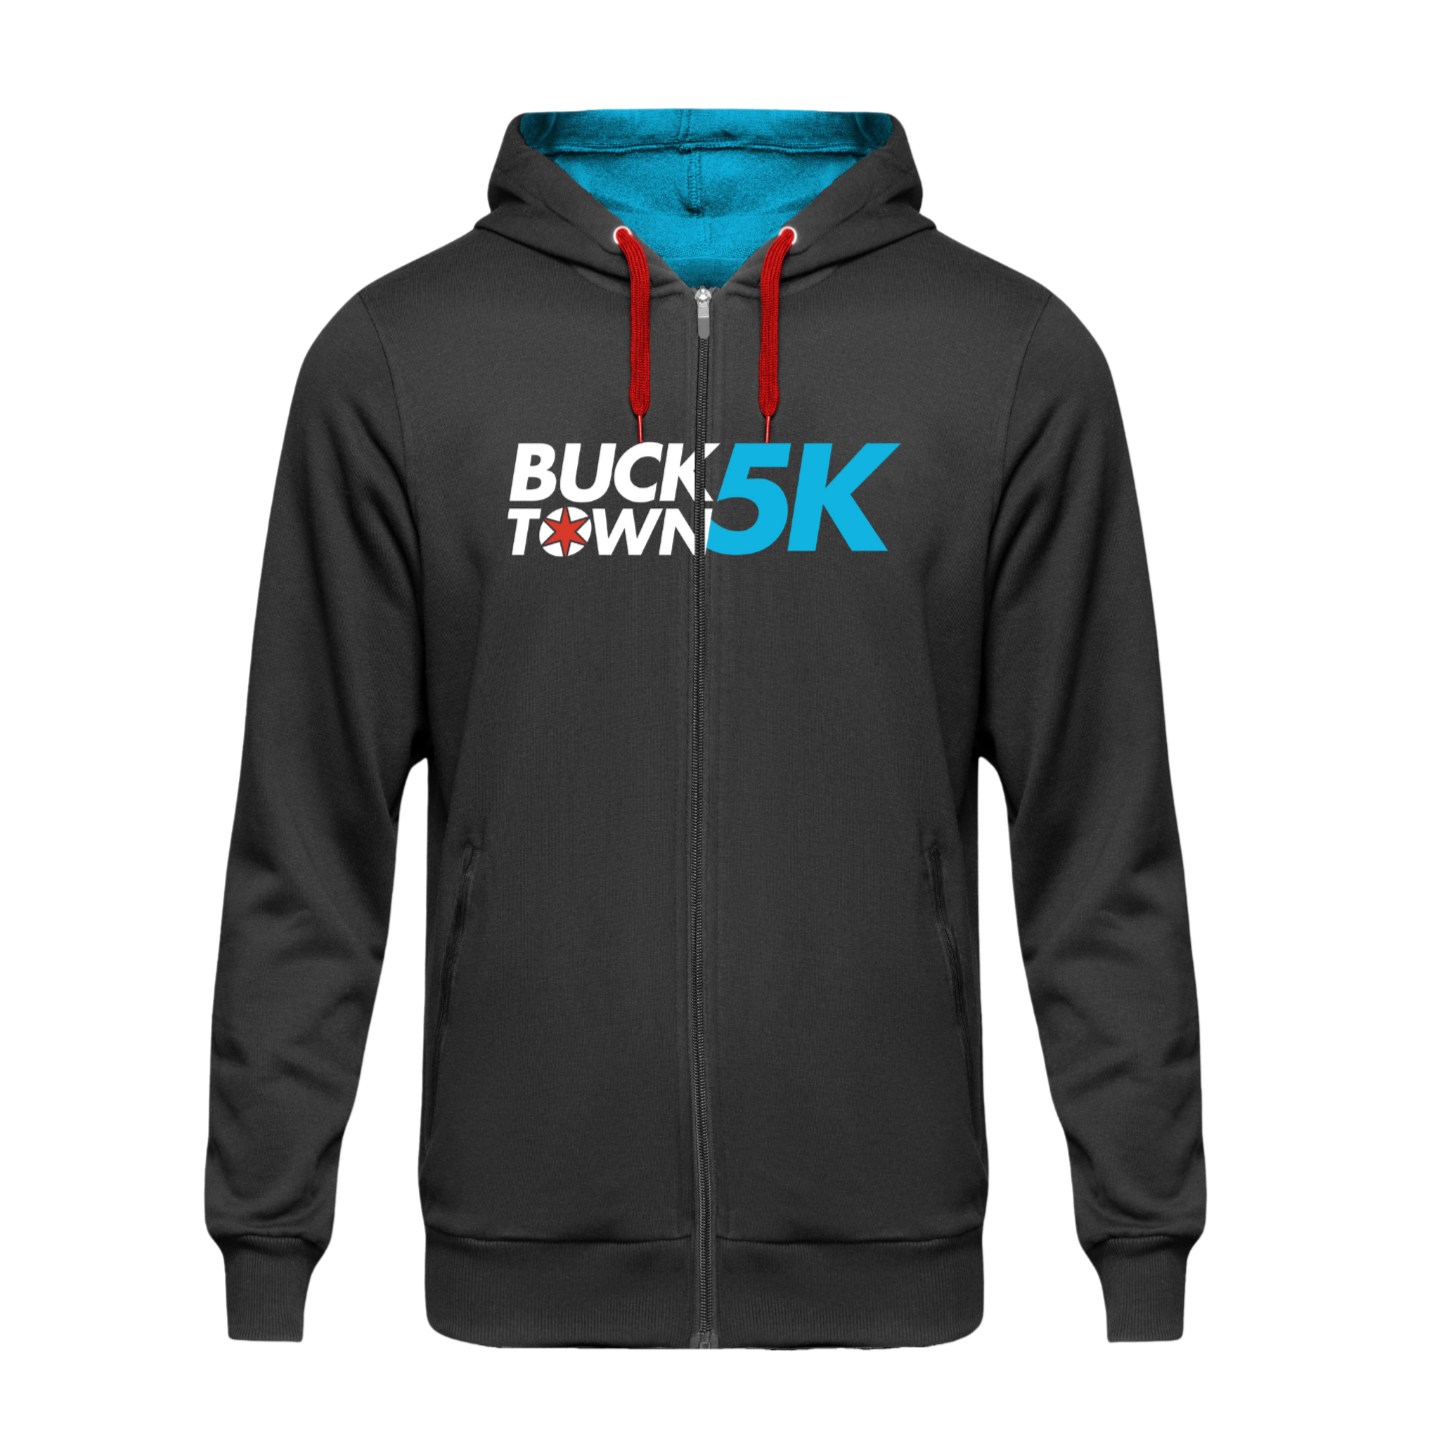 Women's Bucktown 5K Full Zip Hoodie Jacket